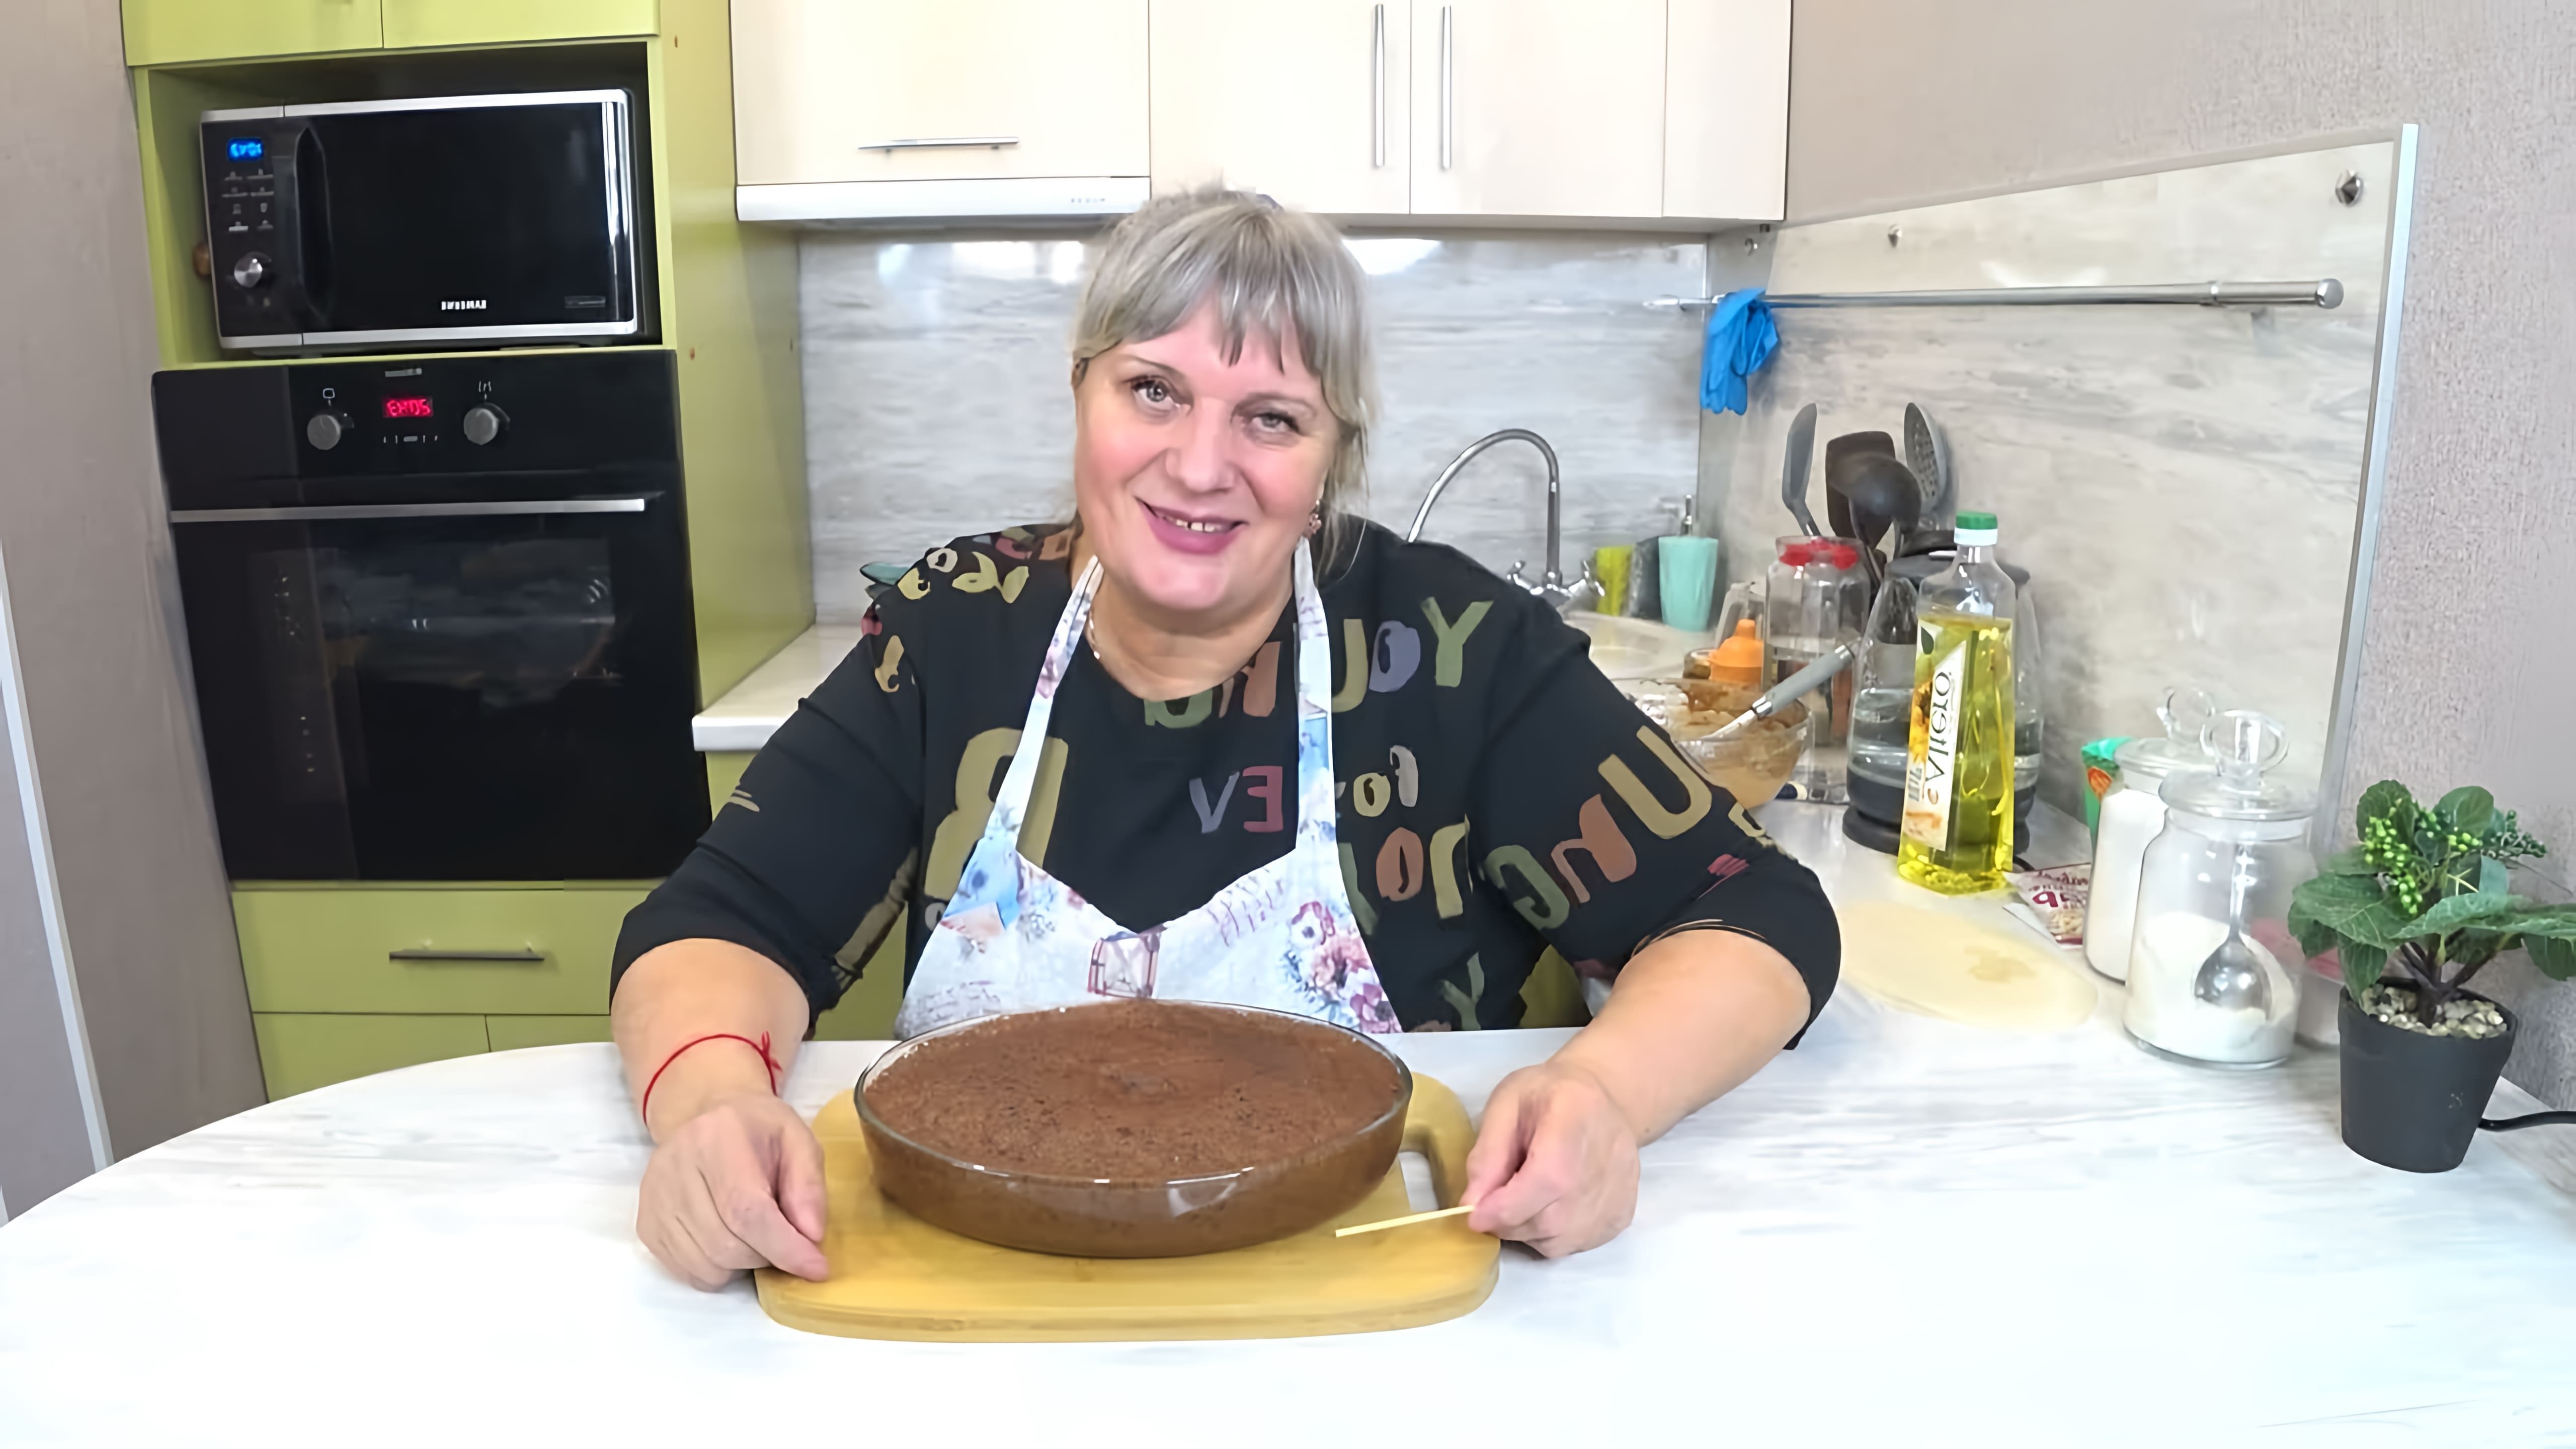 В этом видео демонстрируется быстрый и вкусный рецепт торта, который можно приготовить всего за 5 минут